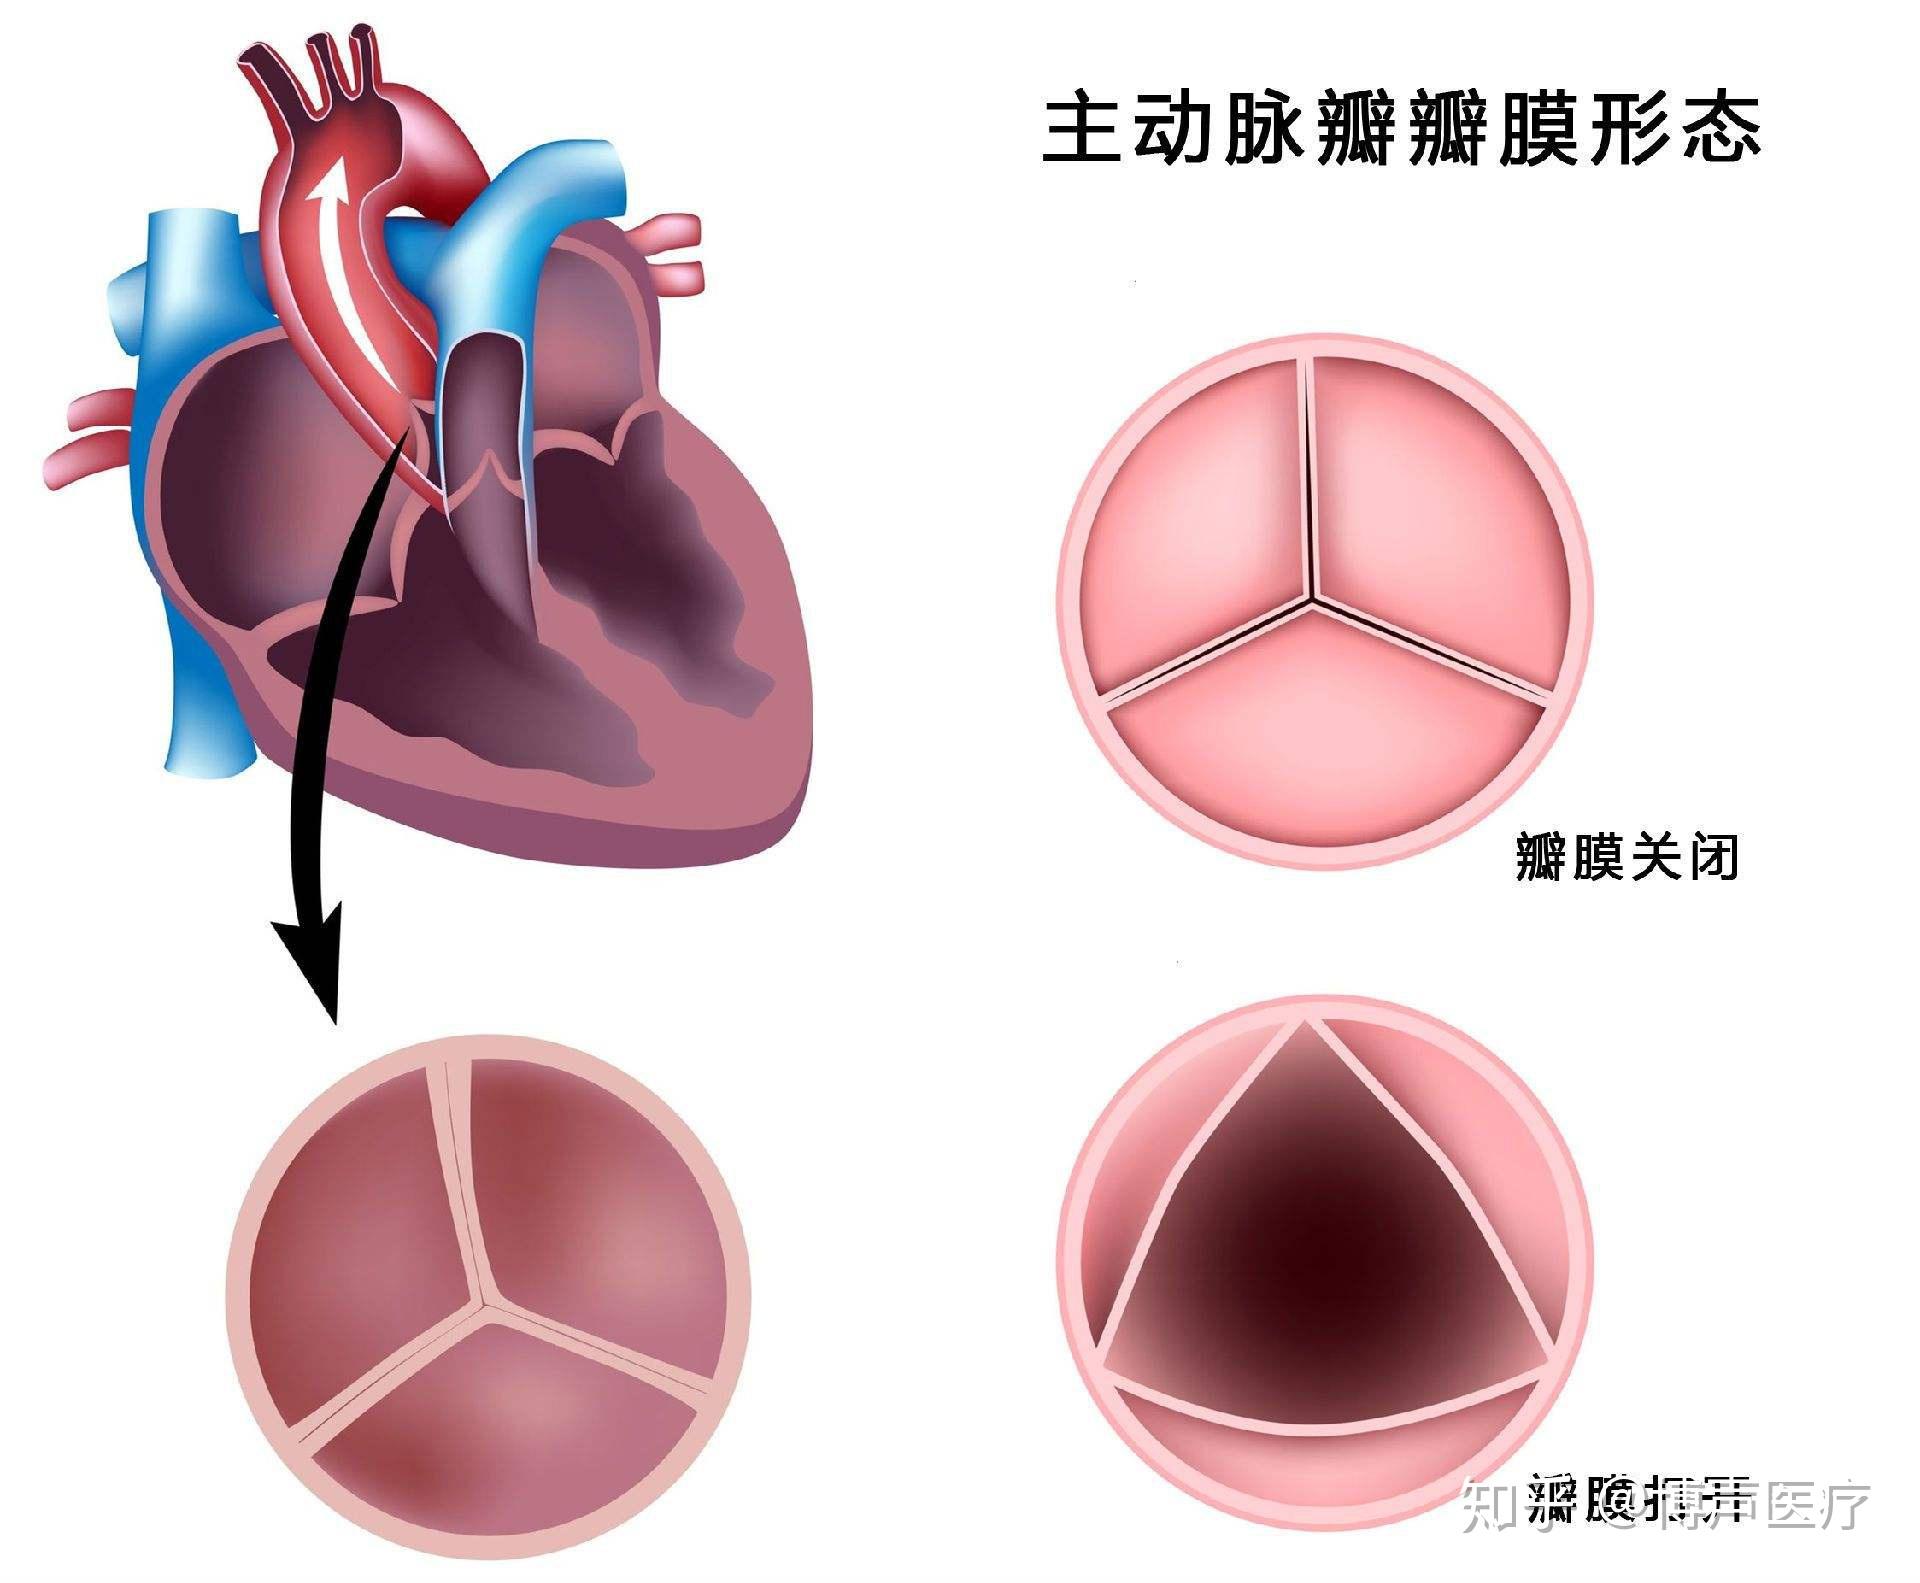 合肥京东方医院首例 TAVR 手术成功，心脏主动脉瓣置换现已进入「介入换新」时代-医院汇-丁香园